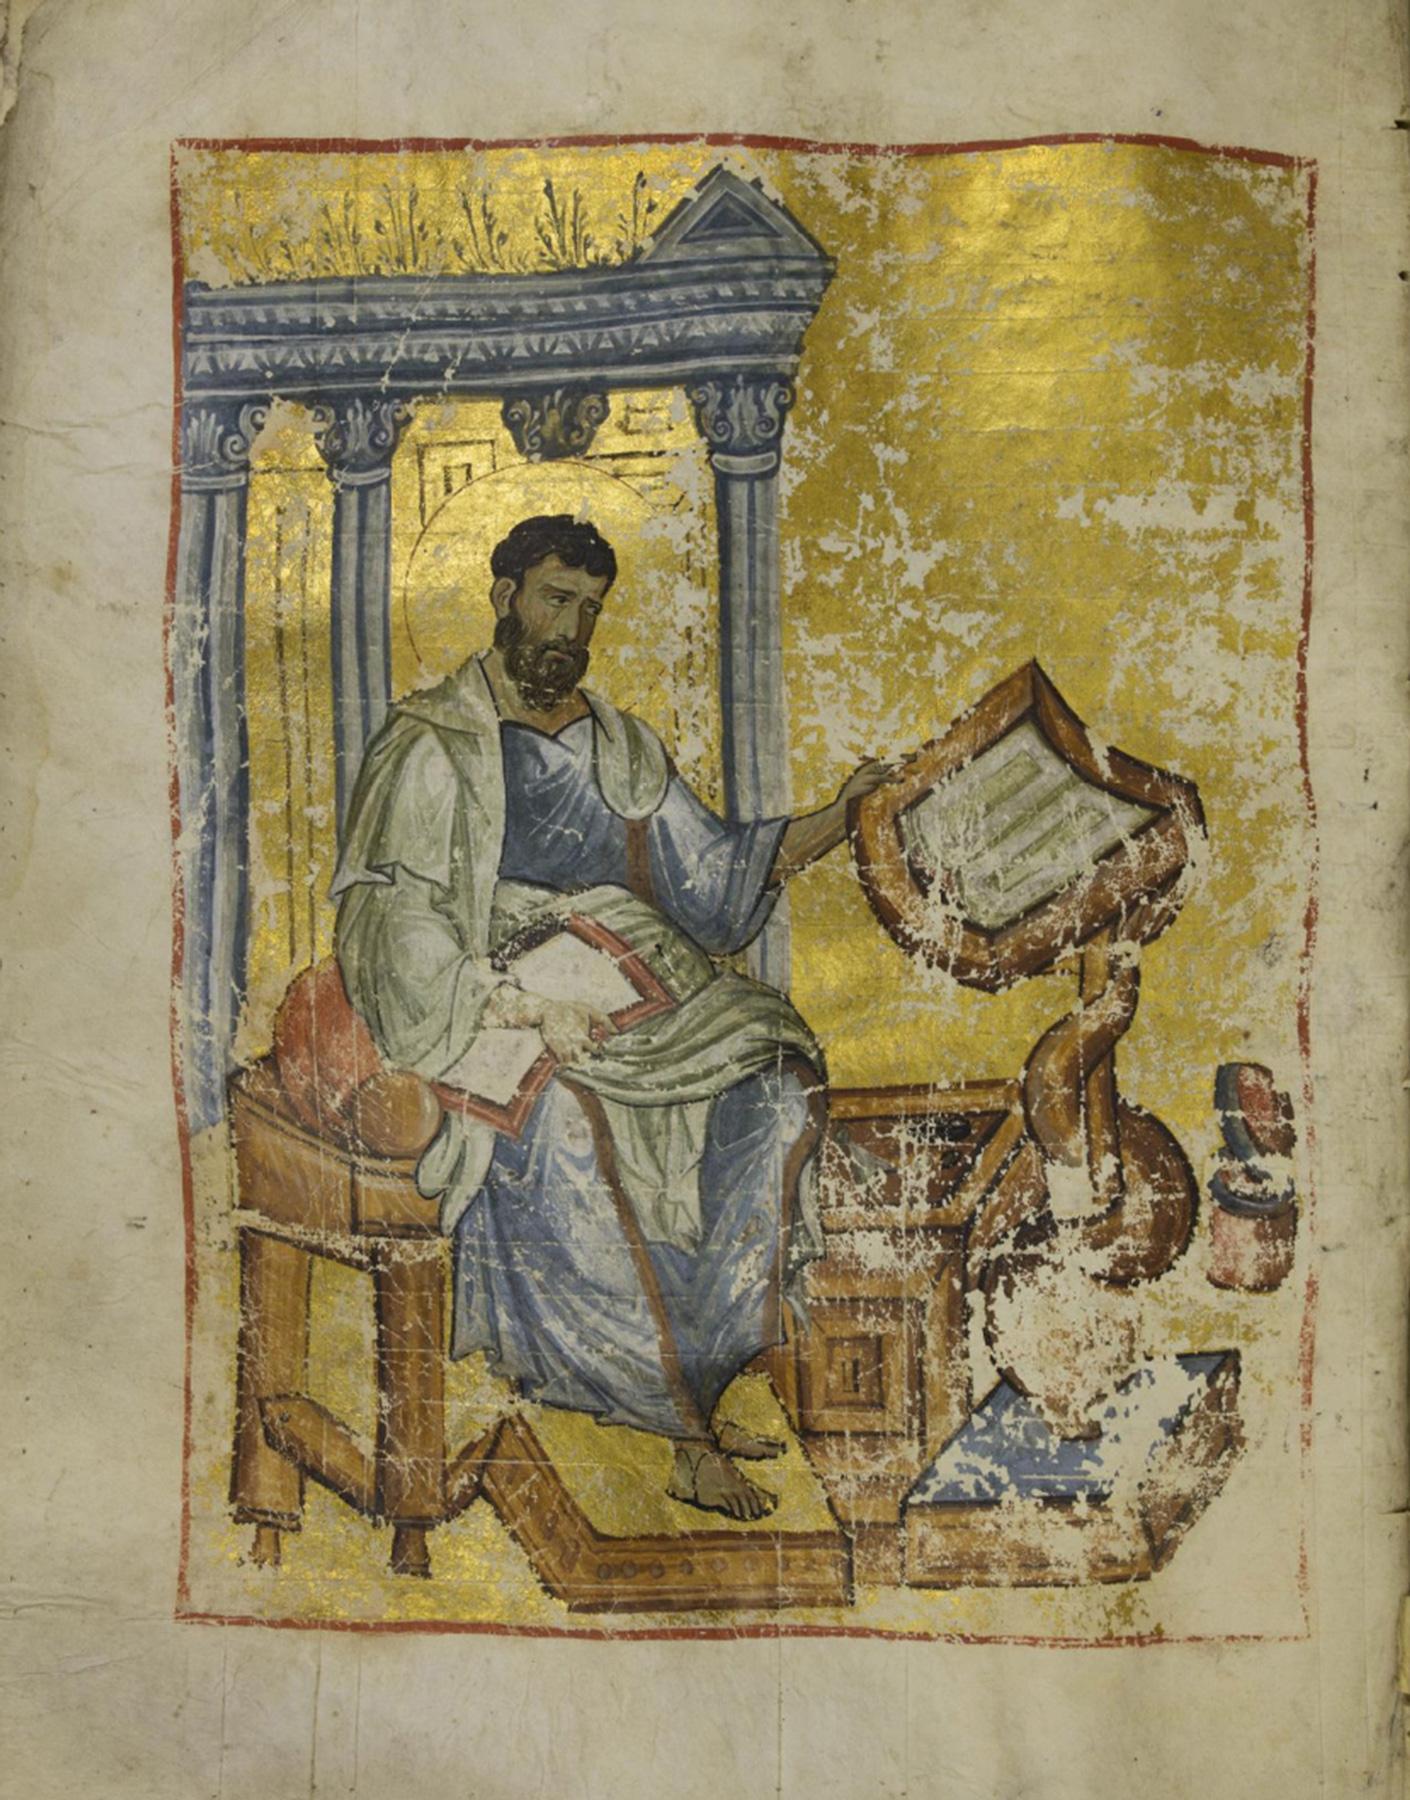 Ο ευαγγελιστής Μάρκος, Ευαγγελιστάριο ΕΒΕ 2645 (Ευαγγέλιο του Μελενίκου), Εθνική Βιβλιοθήκη της Ελλάδος, Καλλιθέα.